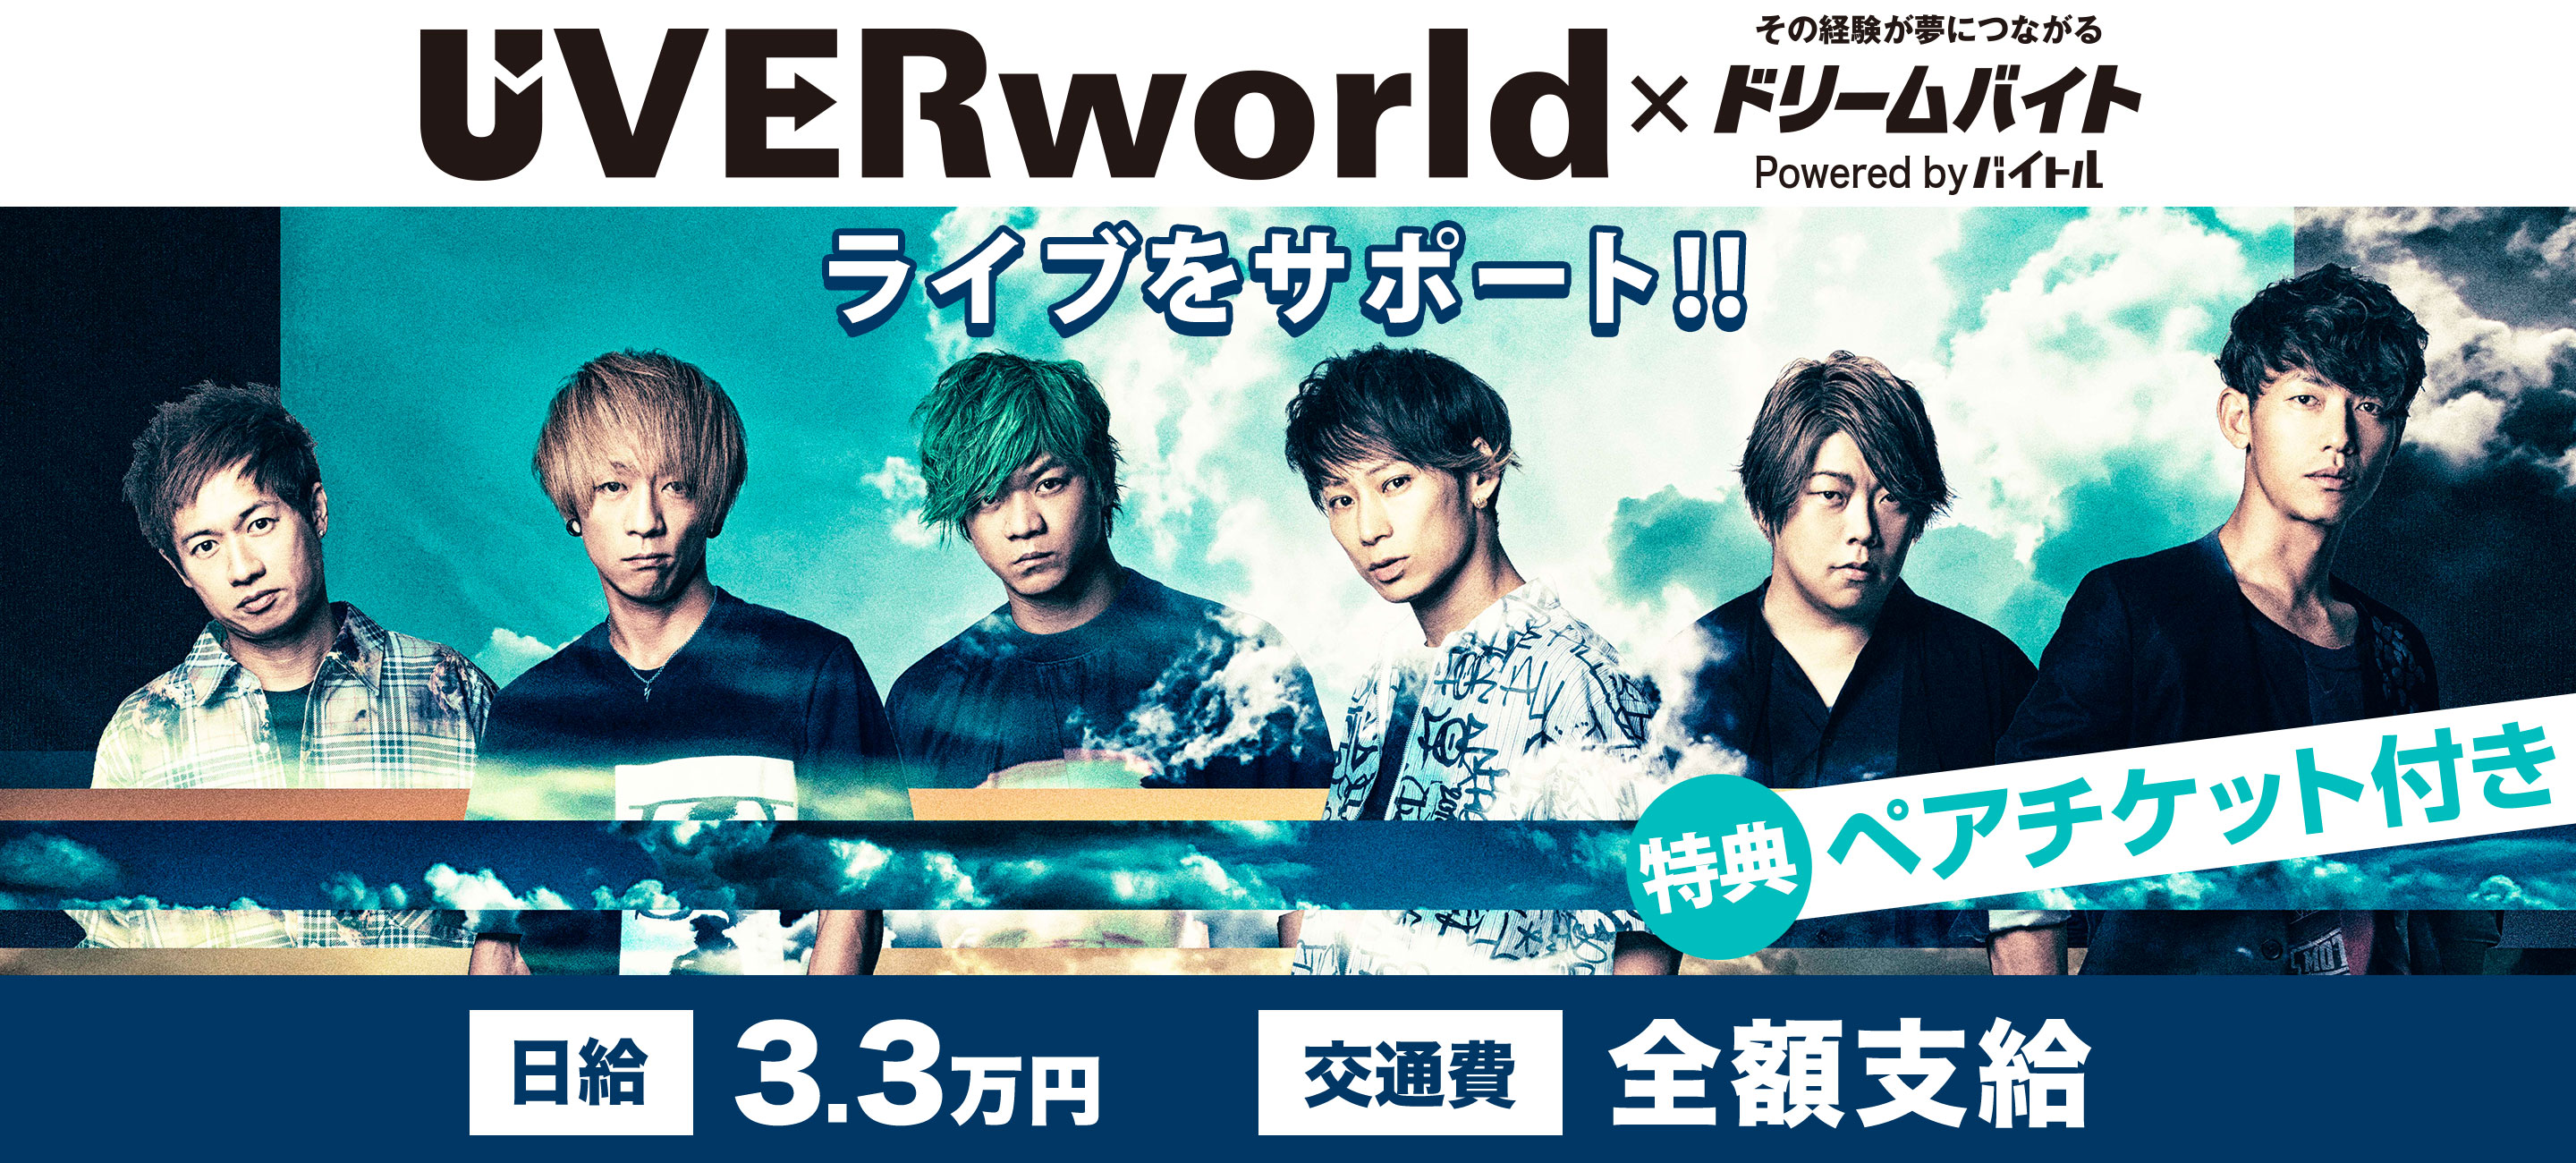 日本を代表する大人気ロックバンドuverworldのライブをサポートできるアルバイトを大募集 ディップのプレスリリース